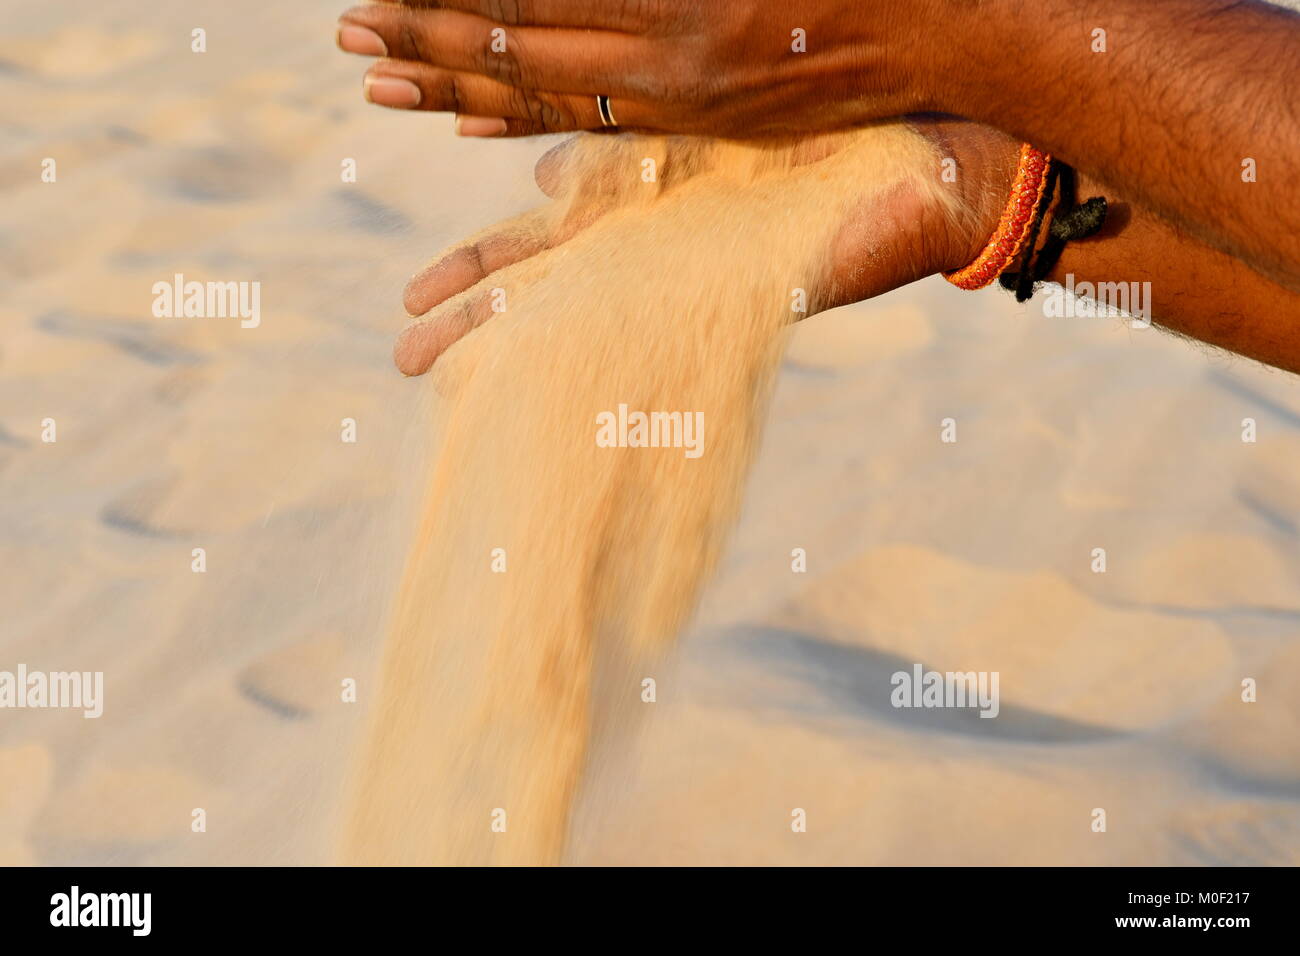 Deserto di sabbia nelle mani di uomini indiano visitando i deserti in Arabia Saudita come destinazione di viaggio Foto Stock